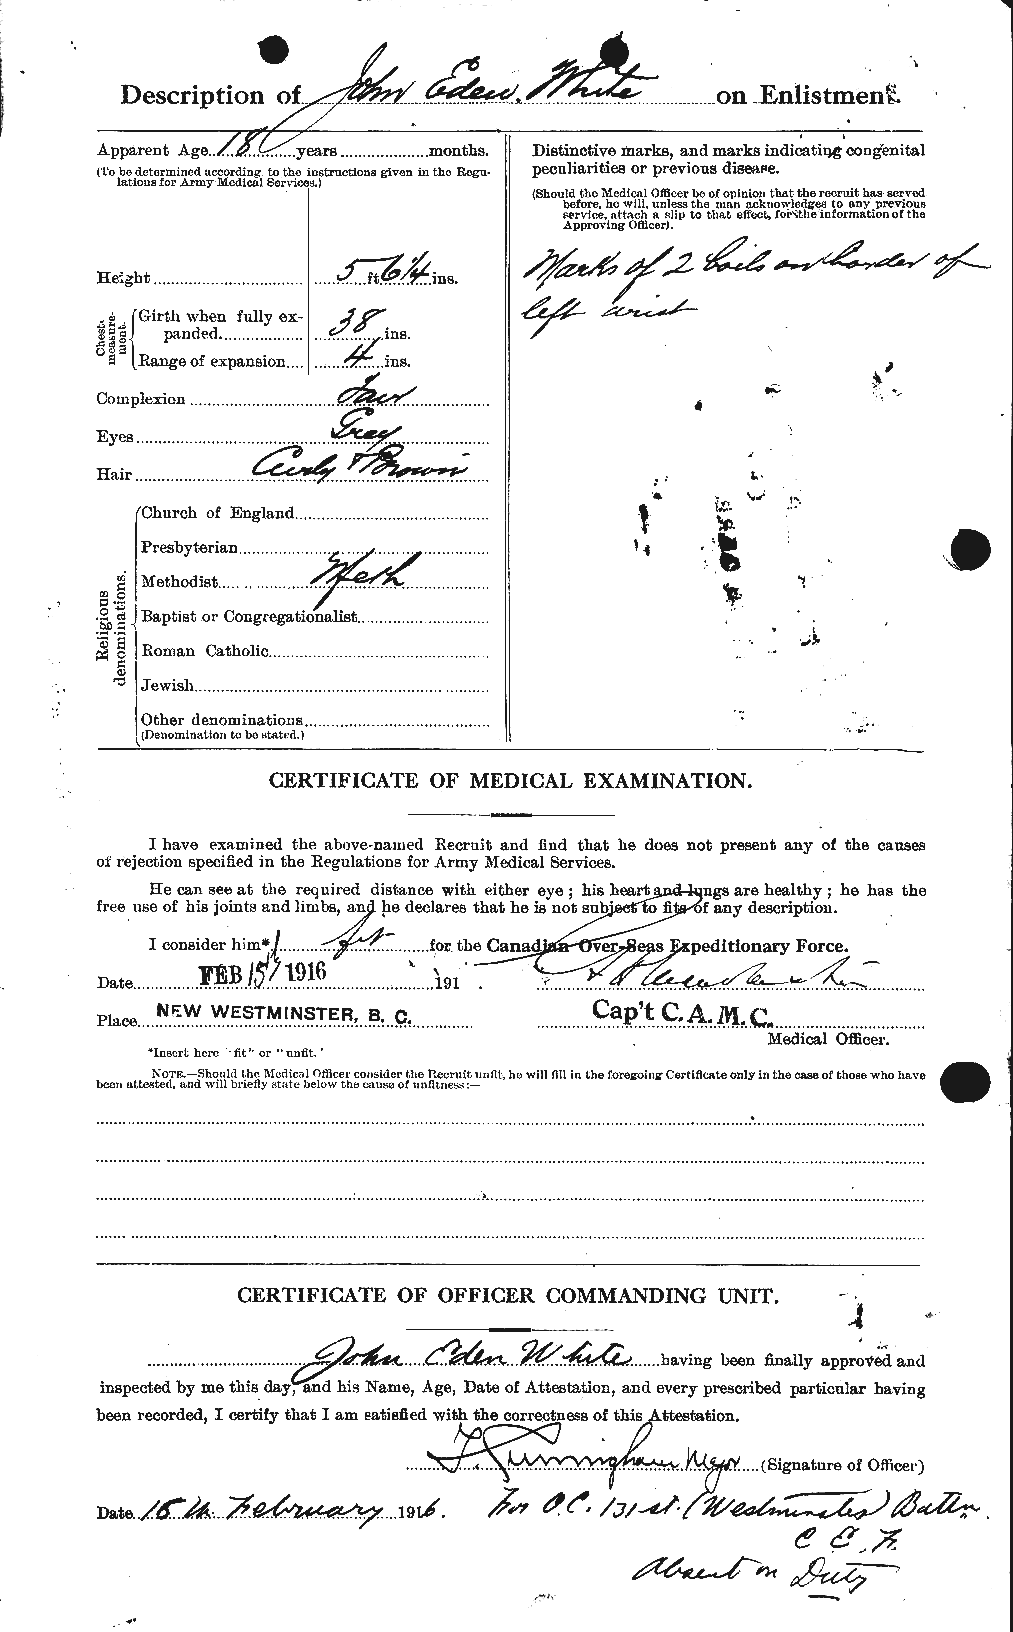 Dossiers du Personnel de la Première Guerre mondiale - CEC 671553b